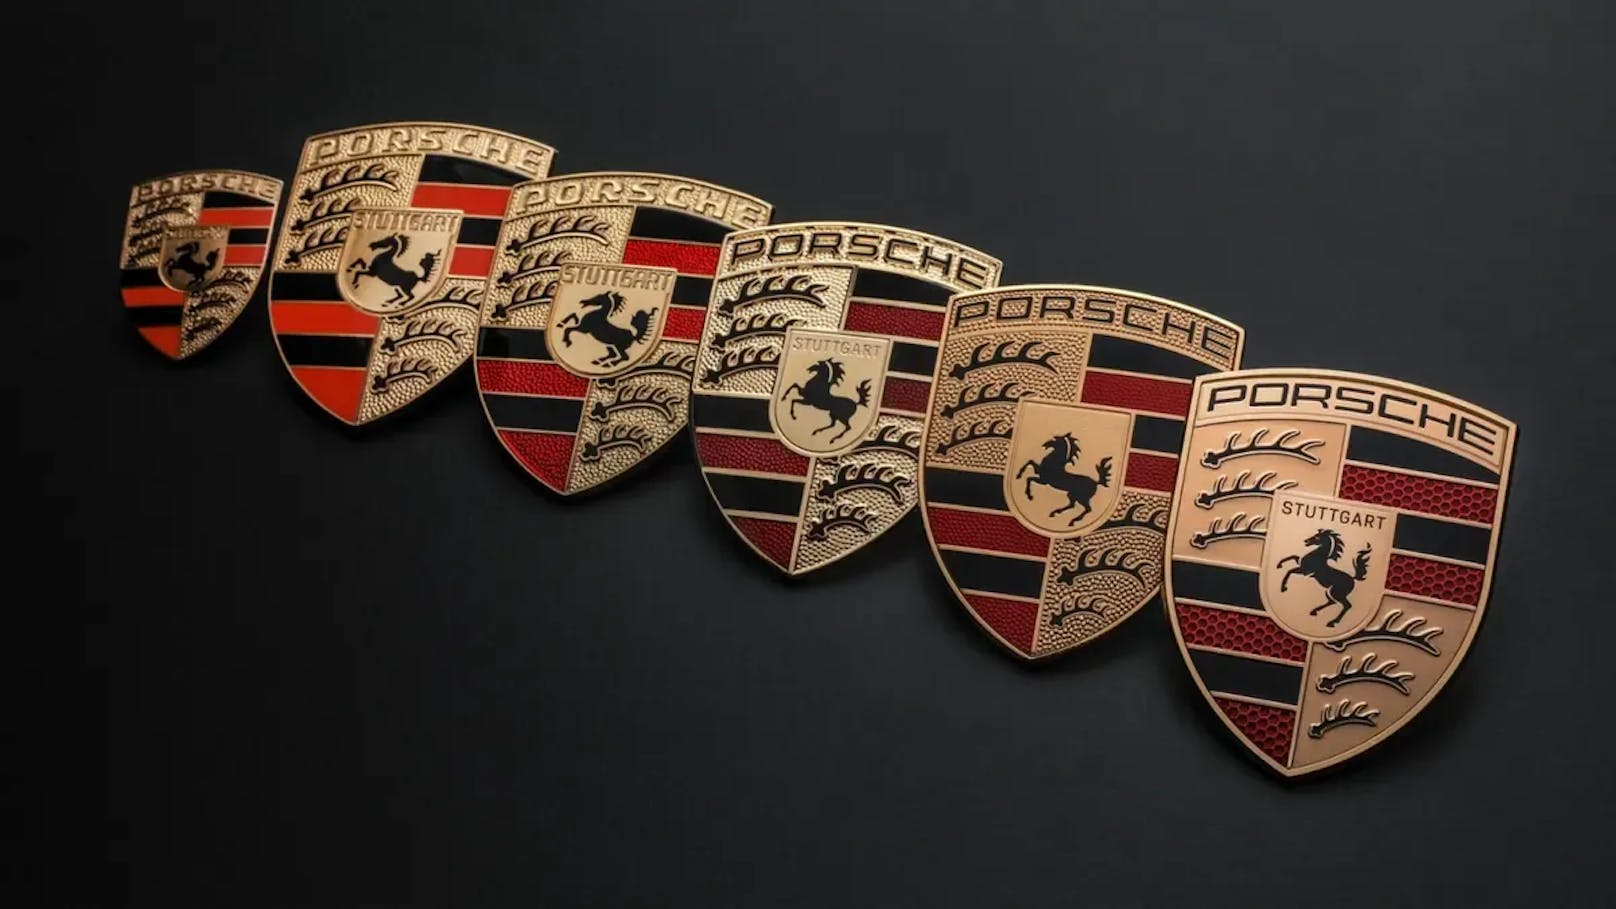 3 Jahre Arbeit: Siehst du Unterschied bei Porsche-Logo?